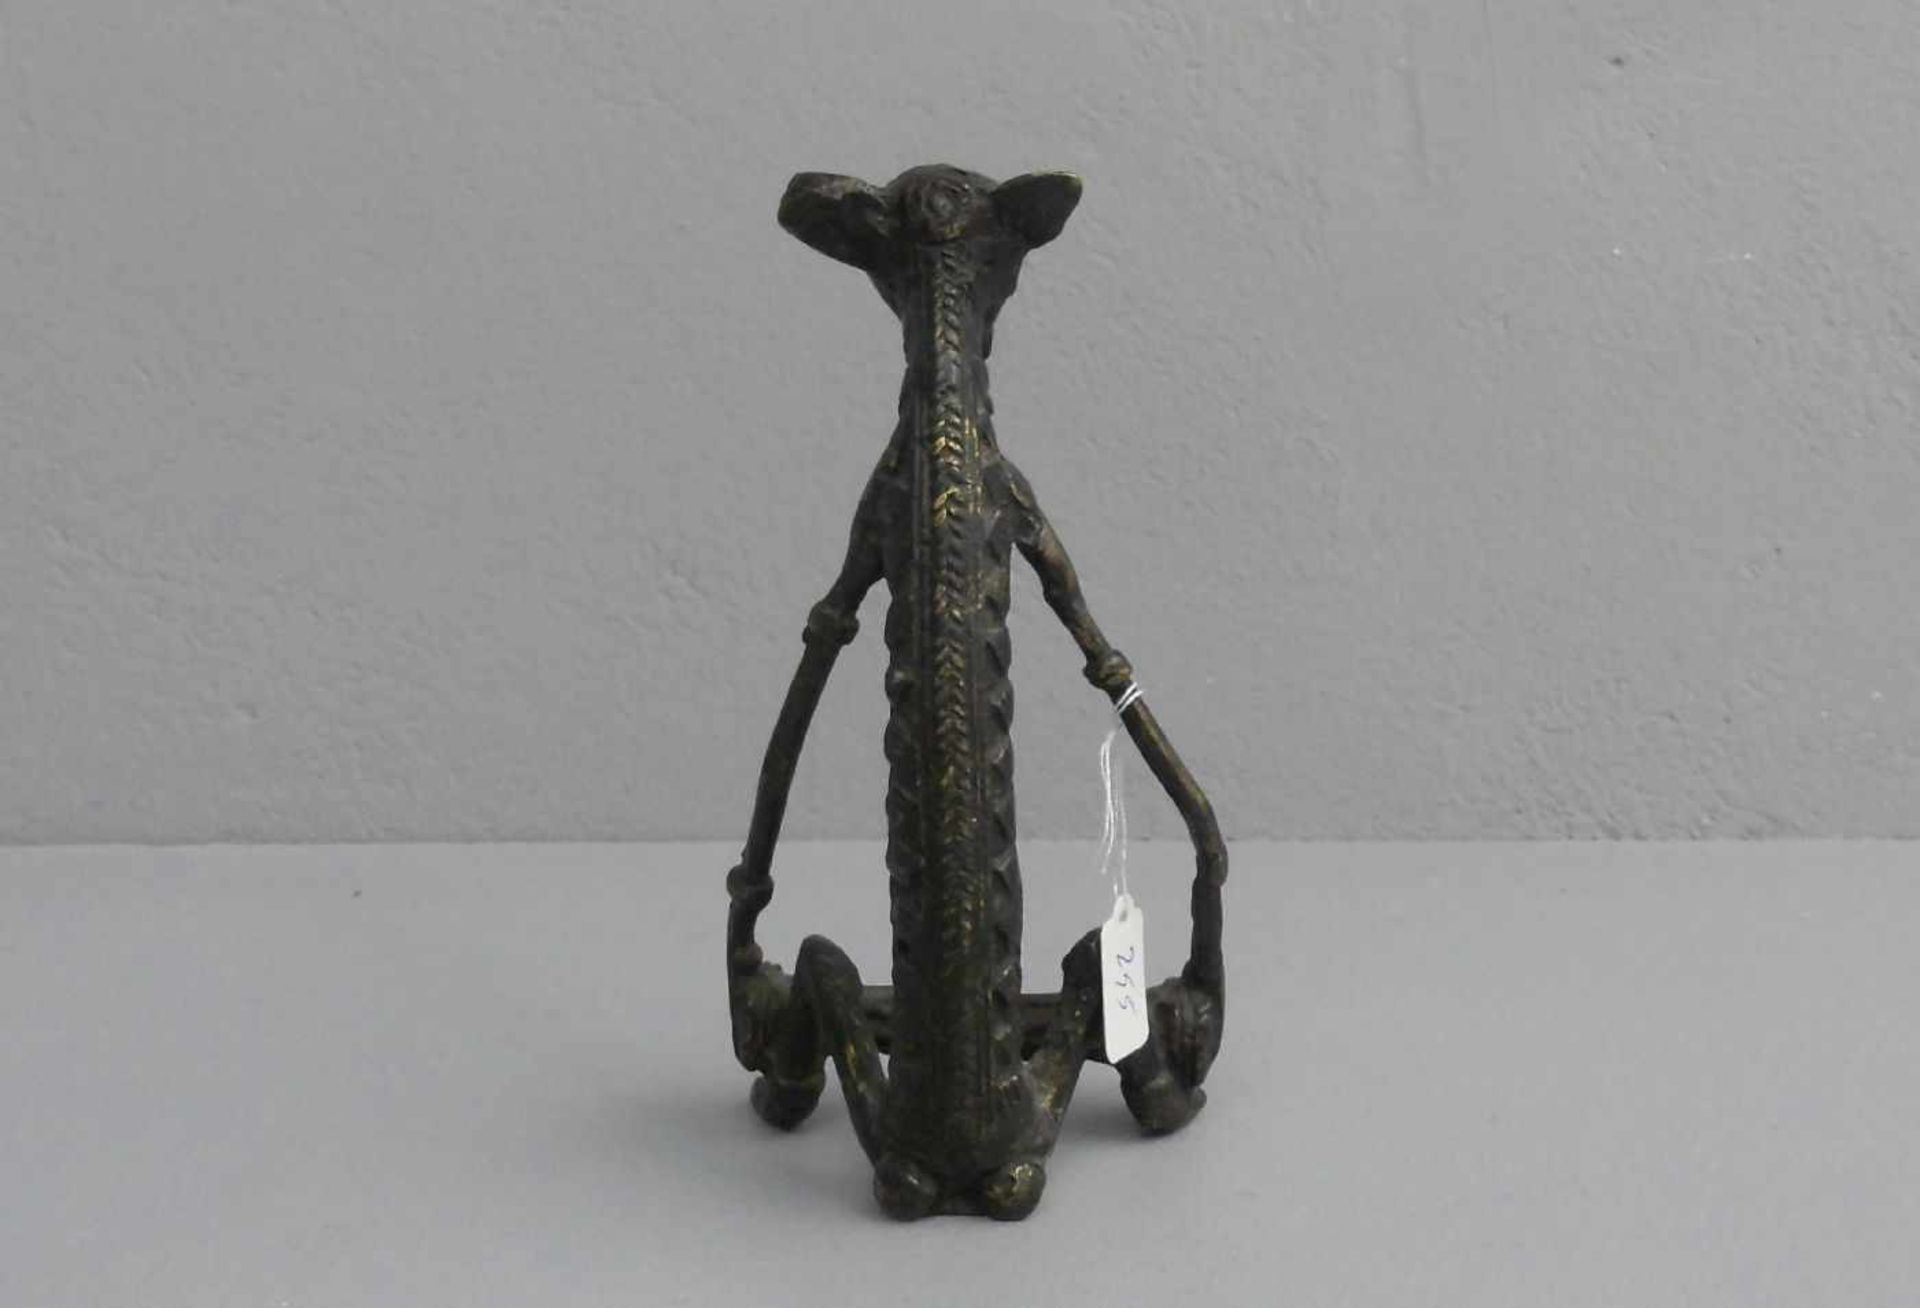 BRONZEFIGUR / sculpture: "CHIMÄRE / FABELWESEN", wohl Afrika, dunkel patinierte Bronze. - Bild 3 aus 3